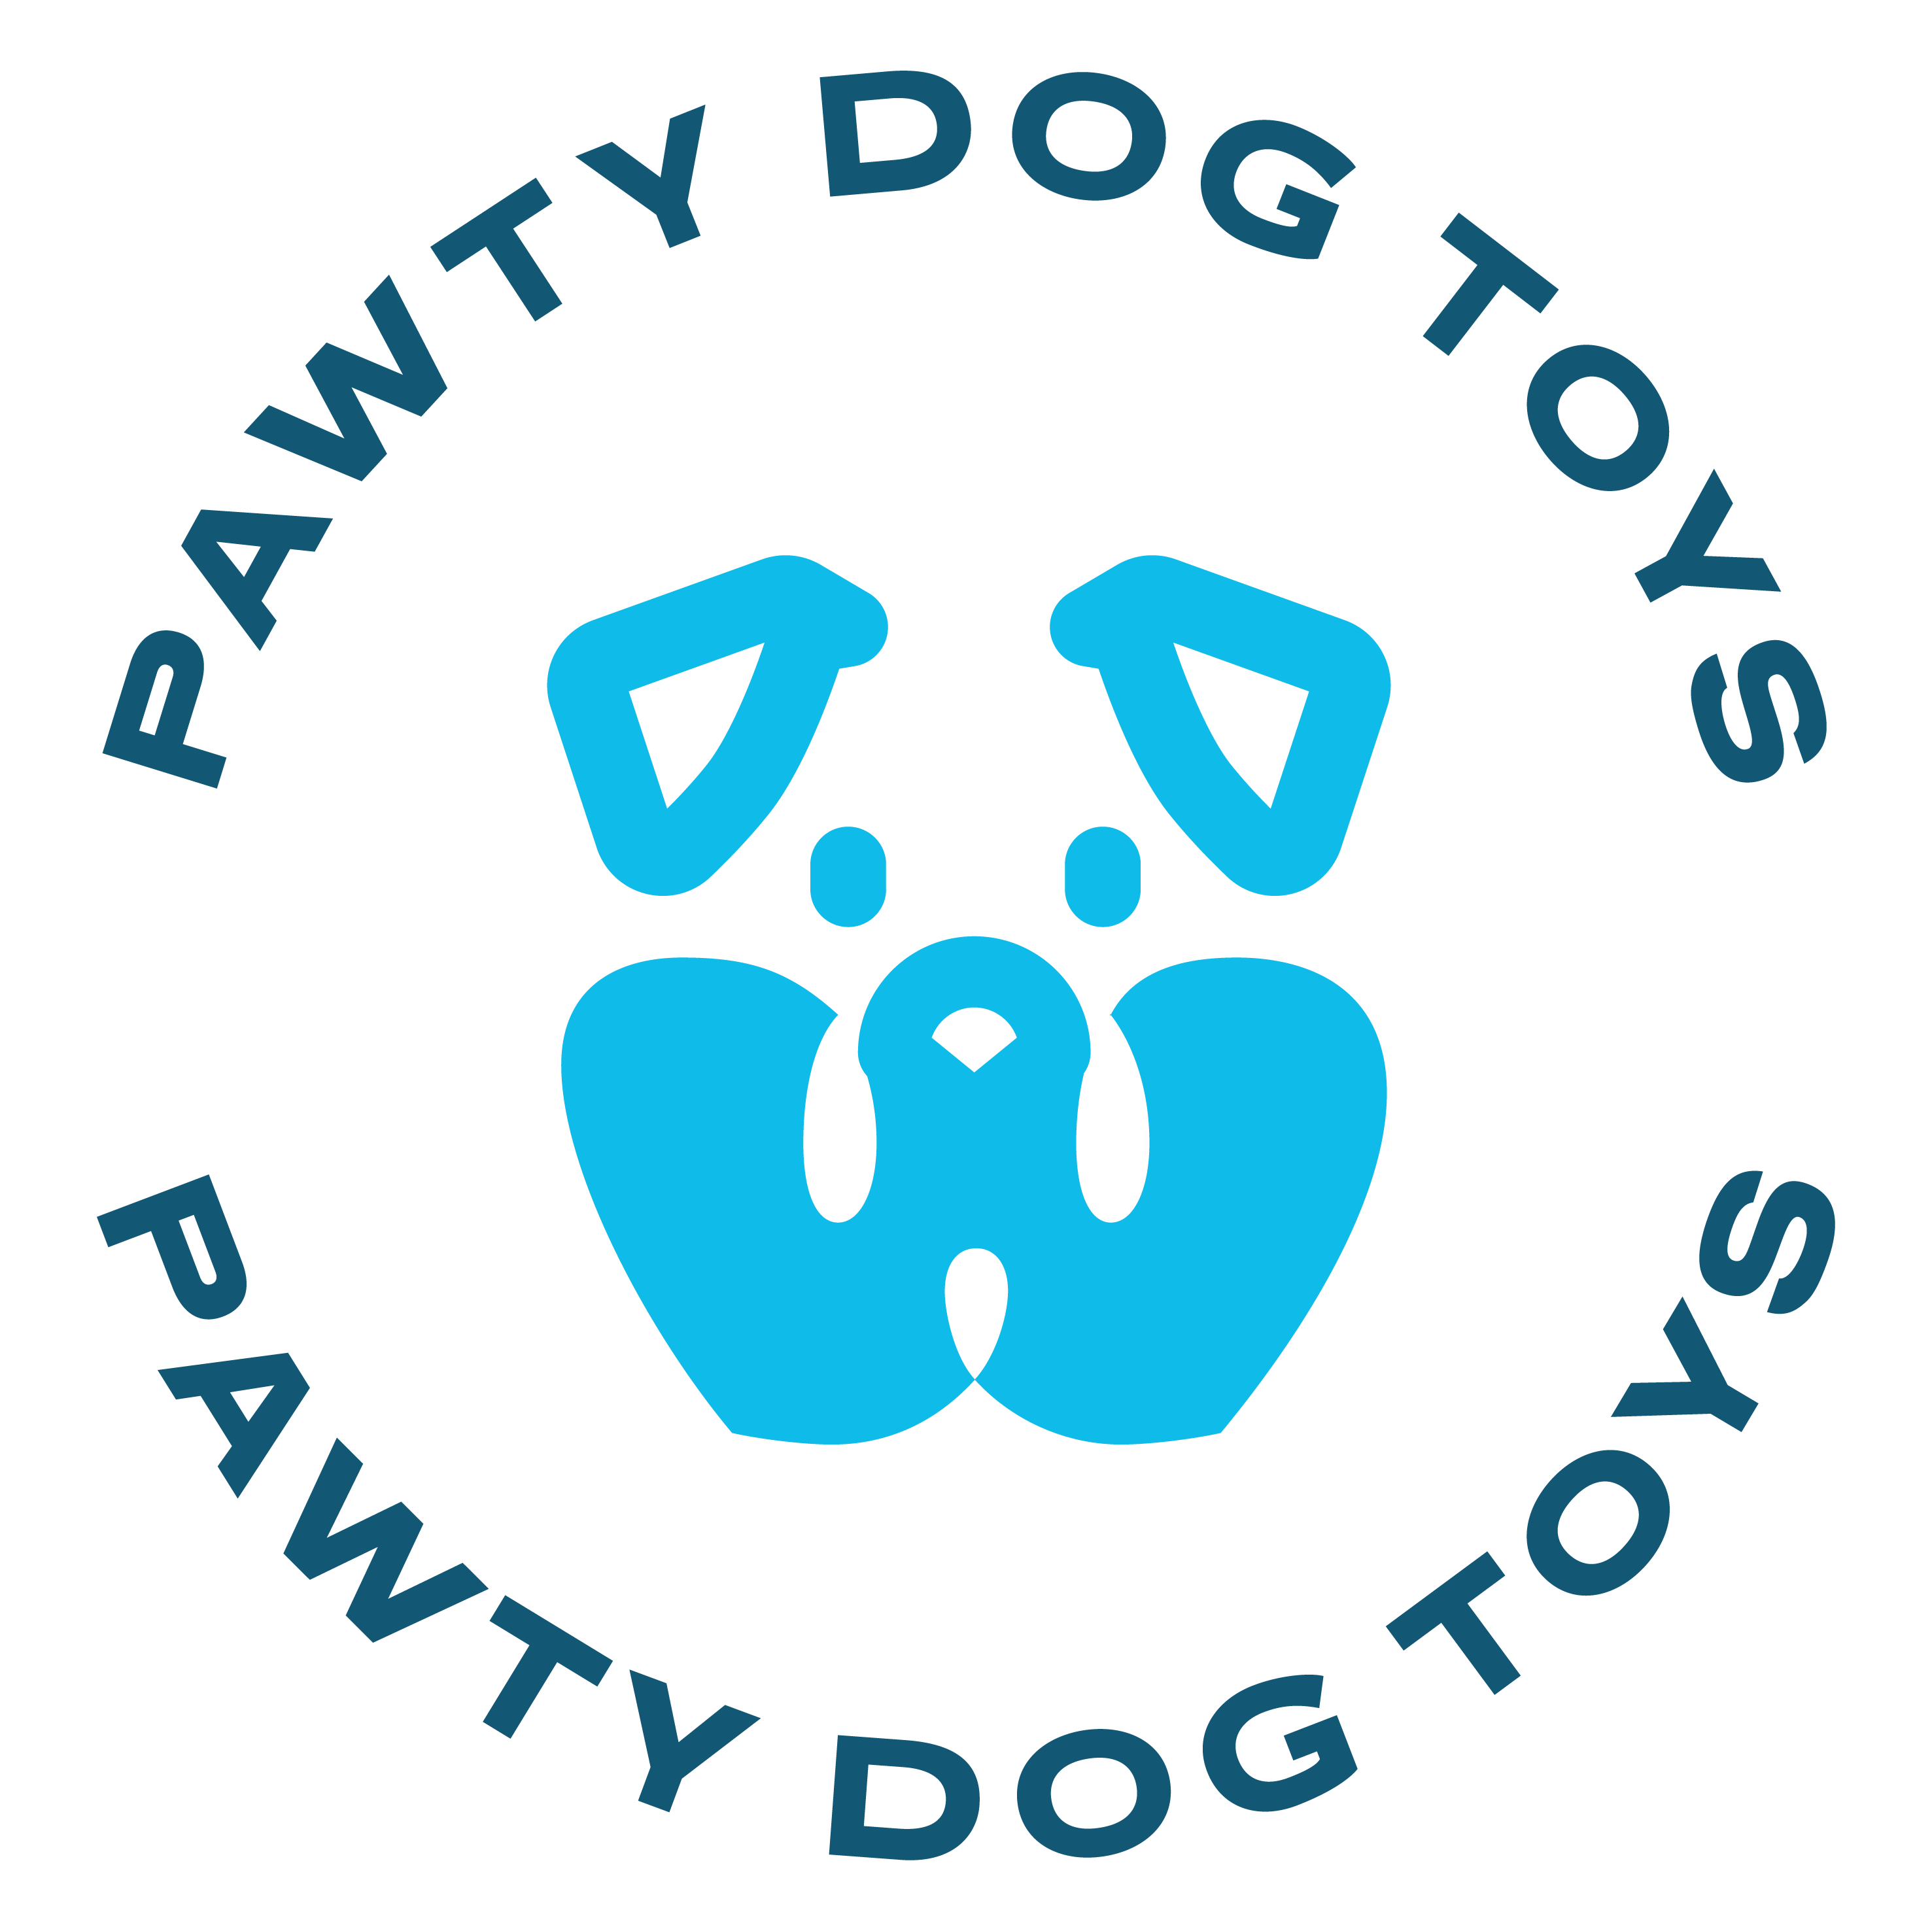 Pawty Dog Toys